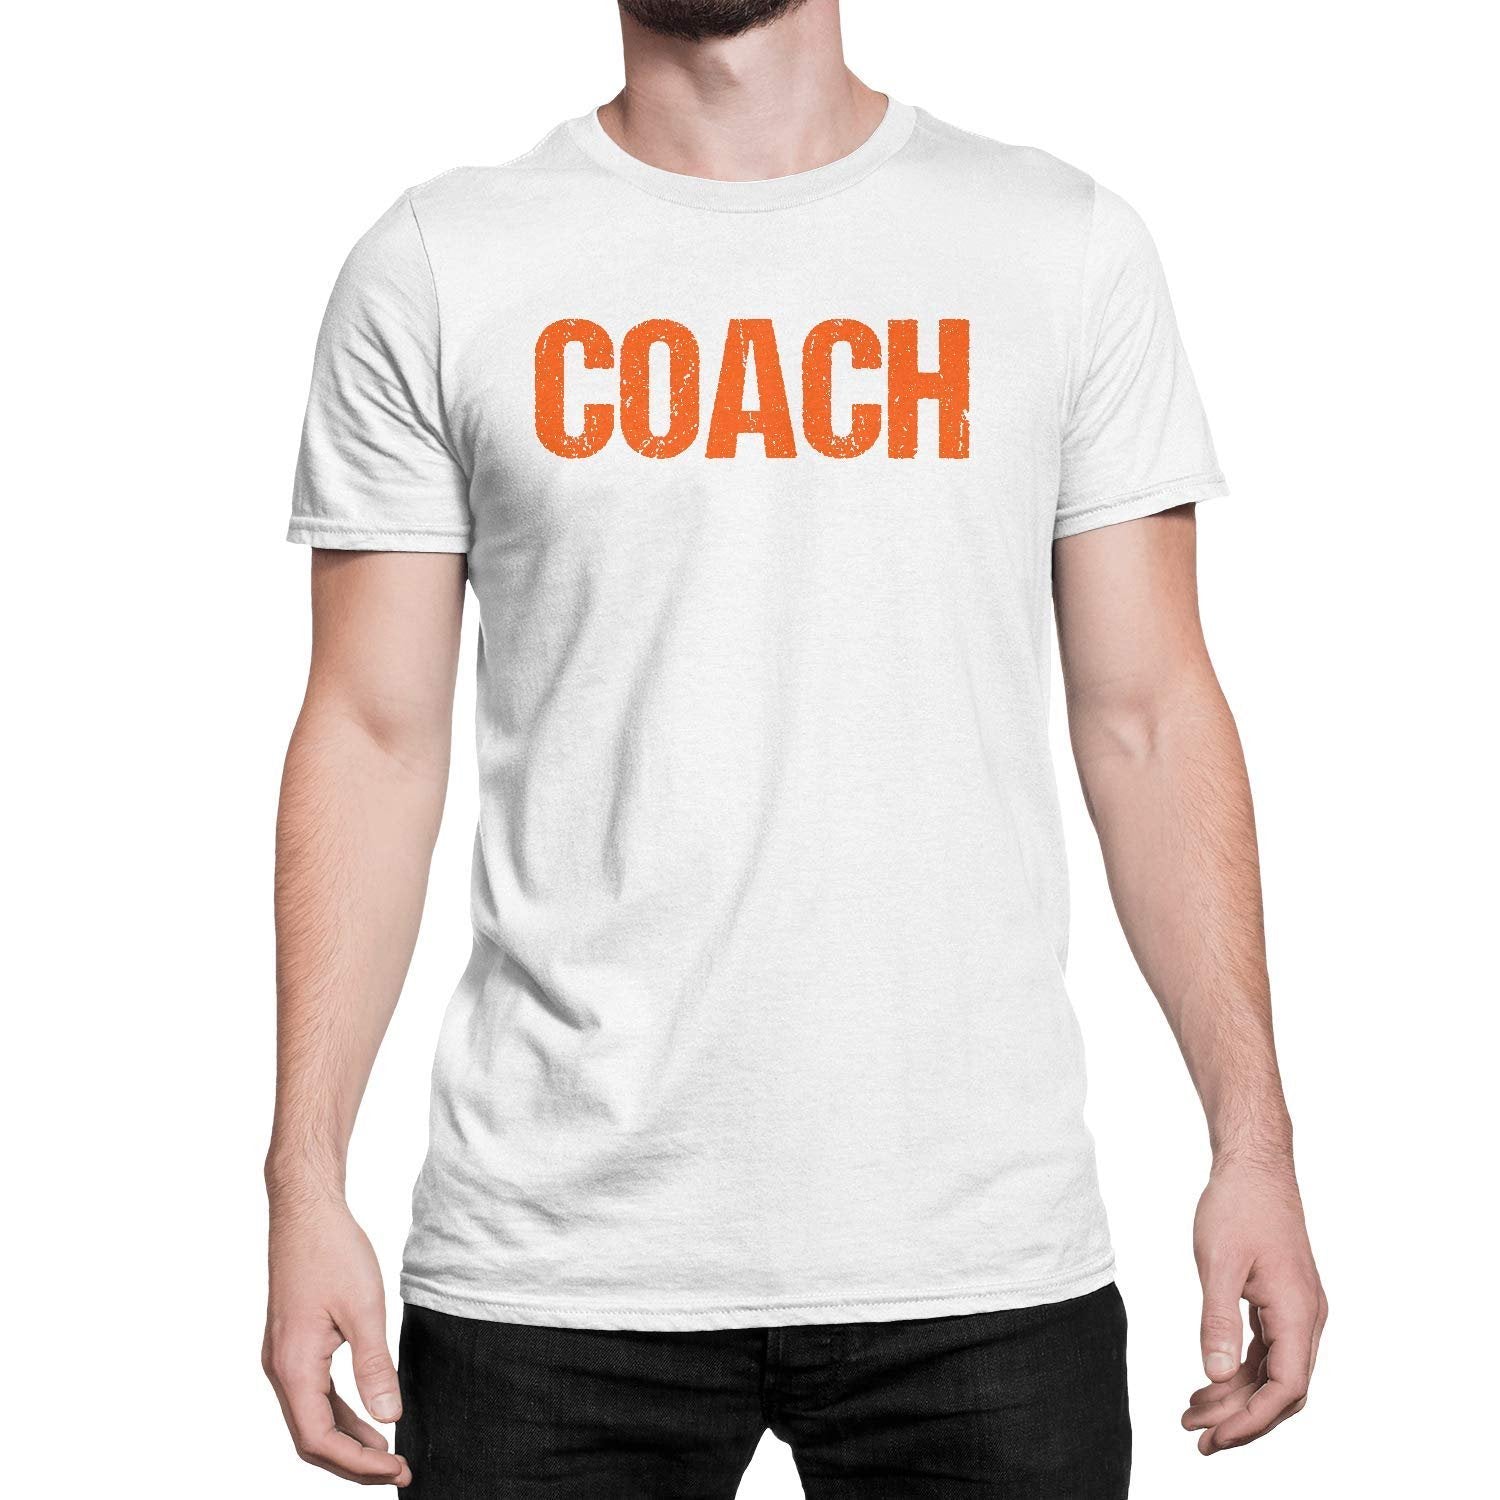 Coach T-Shirt Adult Mens Tee Shirt Front Screen Printed Coaching